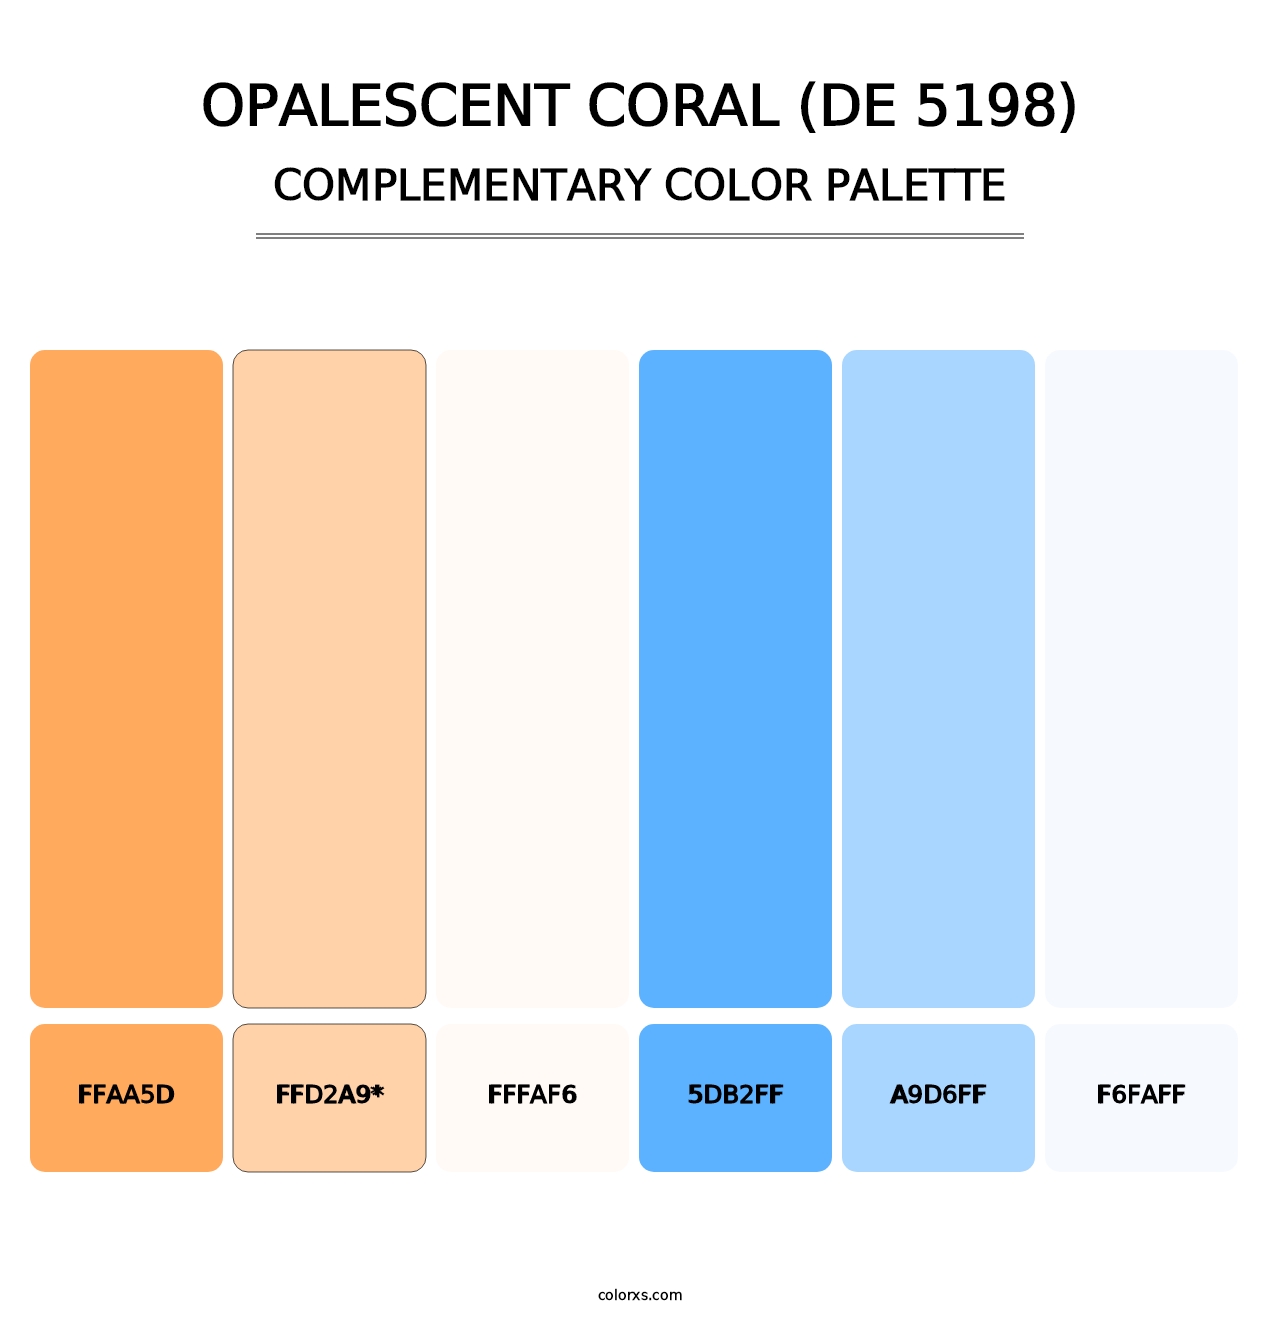 Opalescent Coral (DE 5198) - Complementary Color Palette